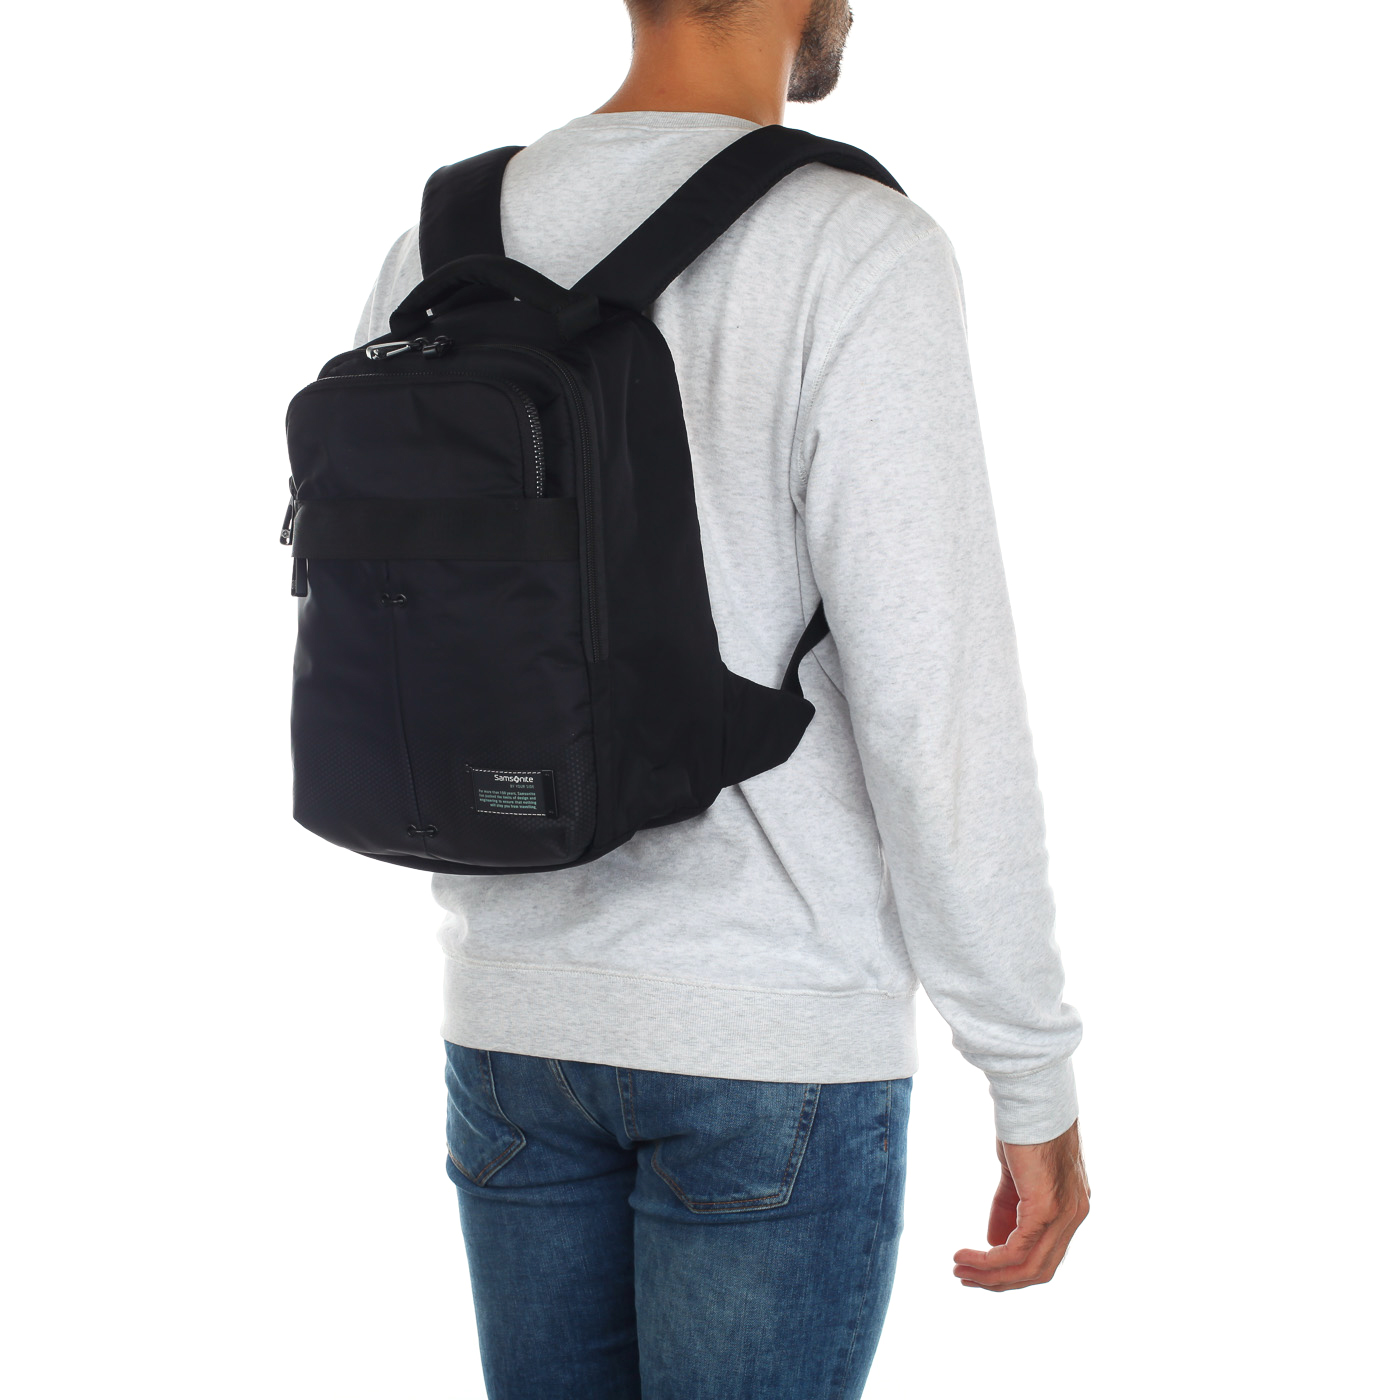 Вместительный городской рюкзак с отделением для планшета Samsonite CityVibe